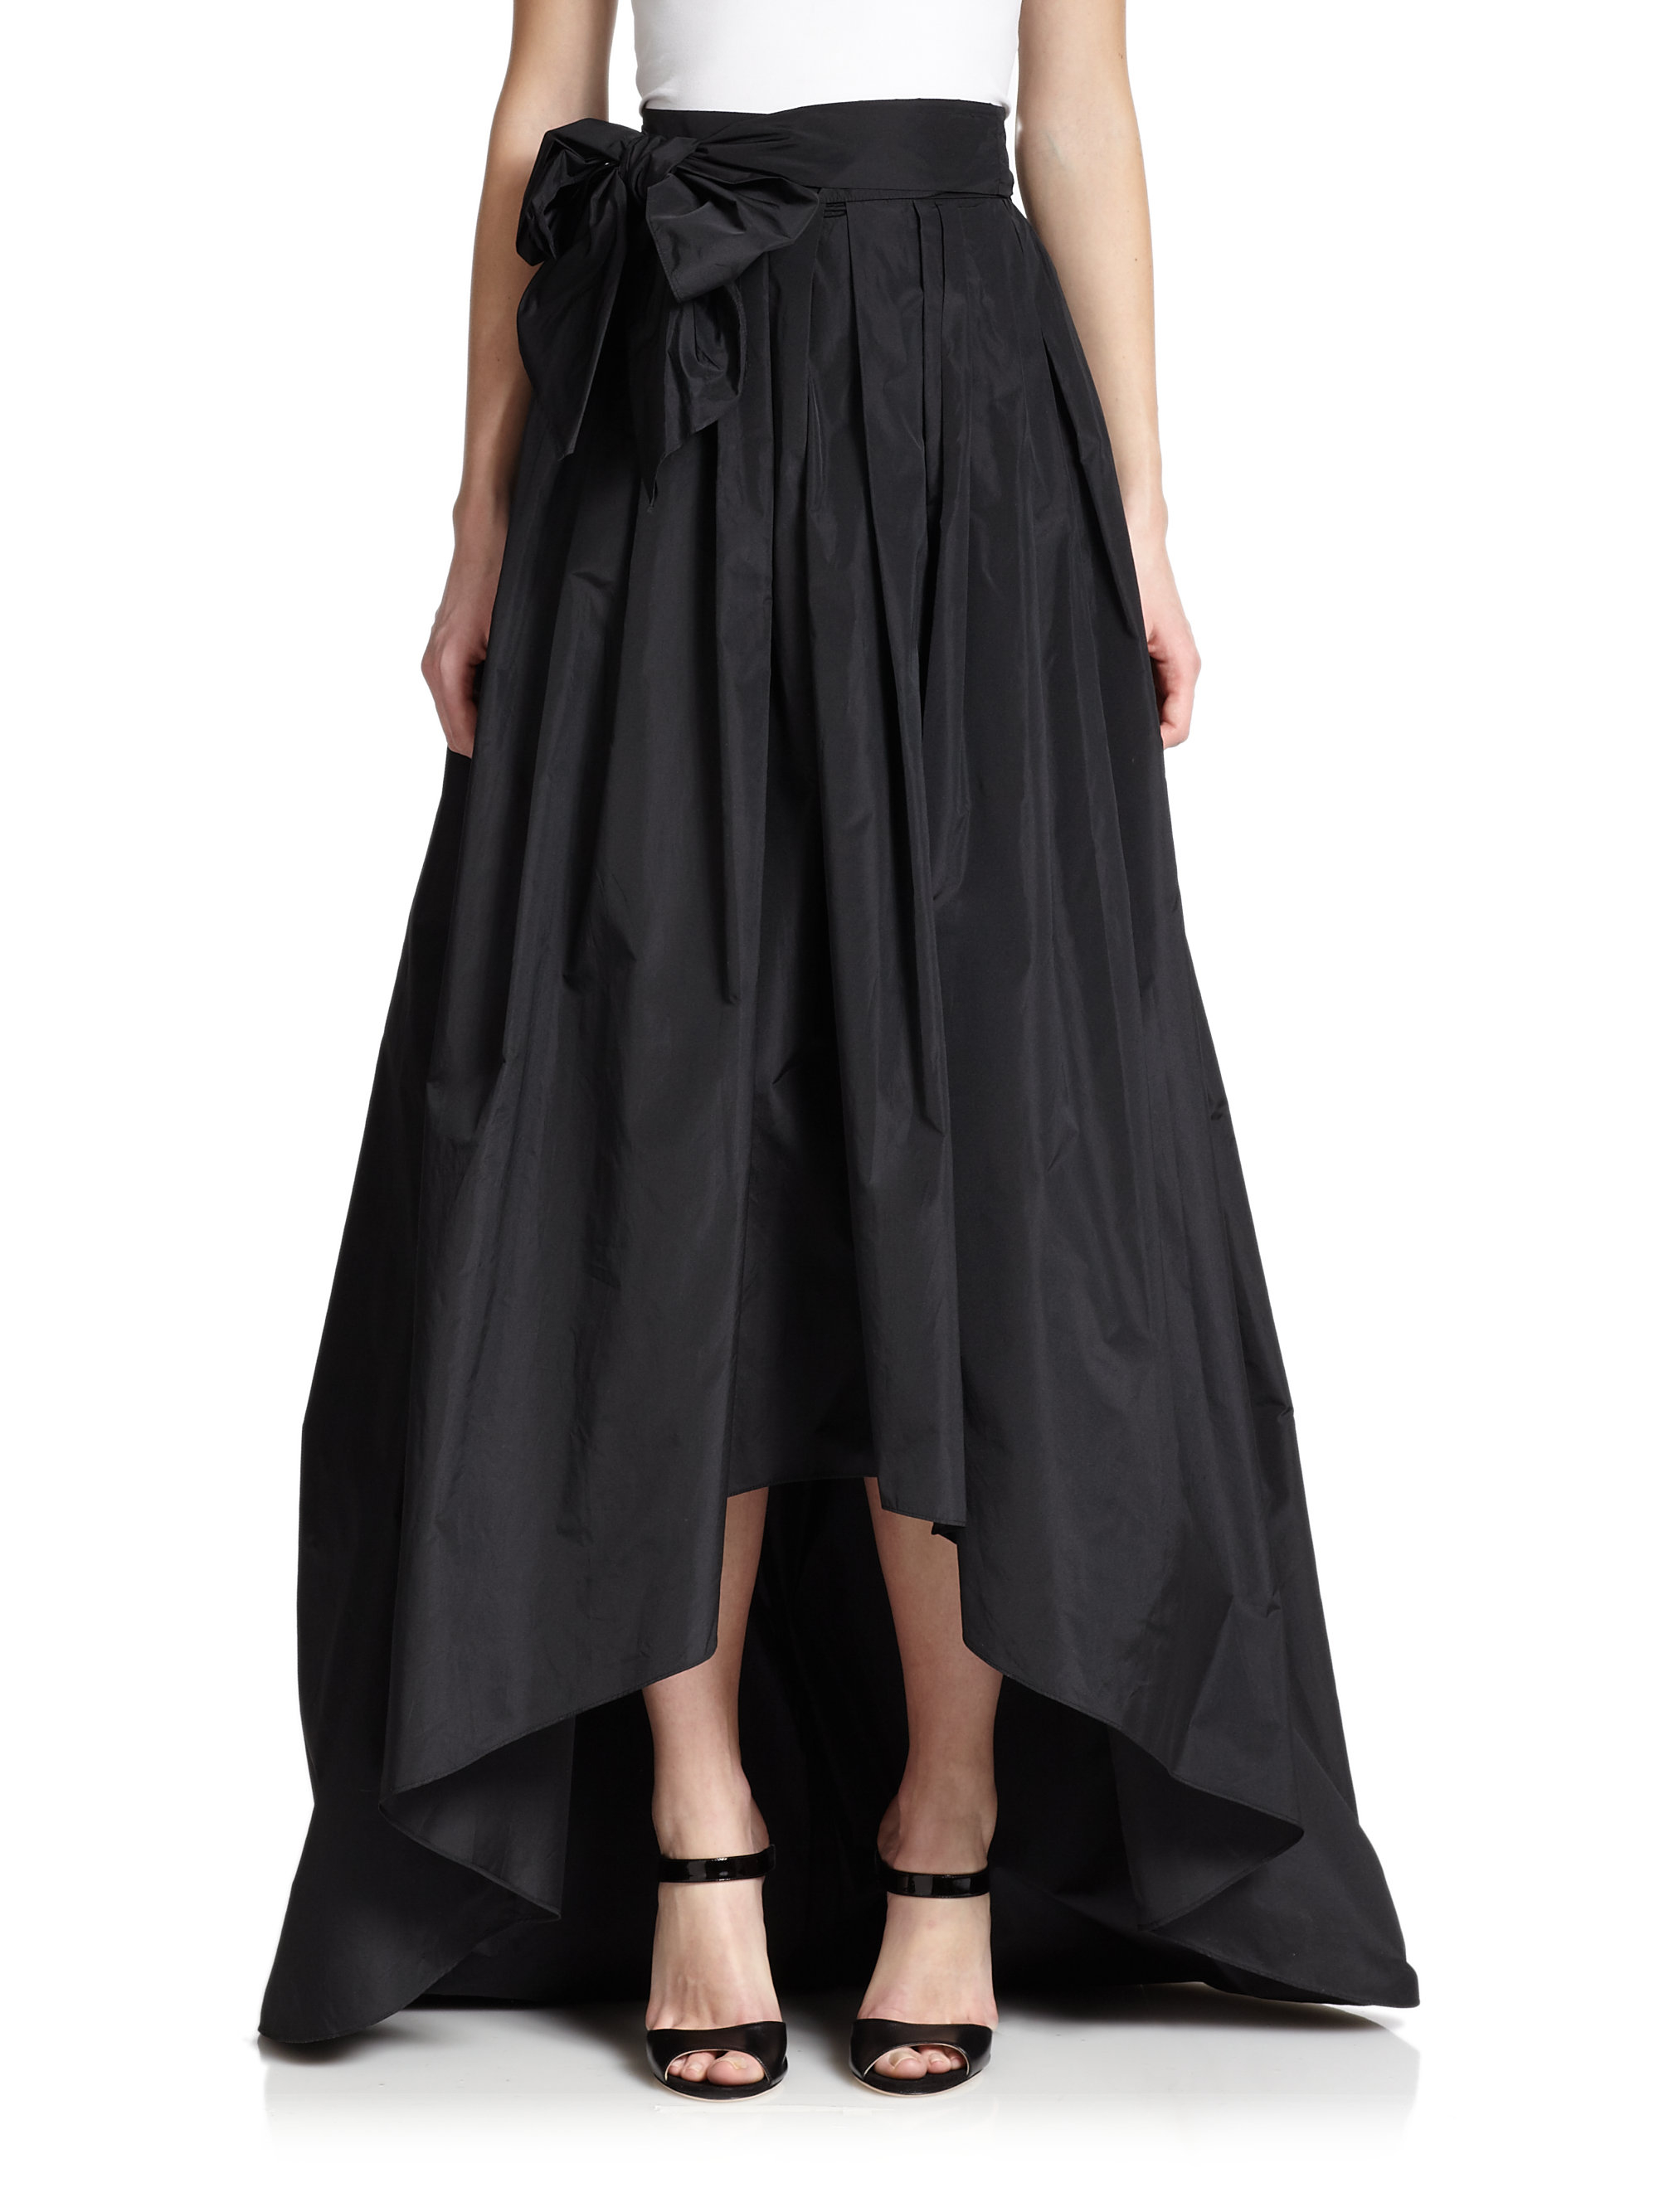 Lyst - Escada Taffeta Hi-lo Ball Skirt in Black